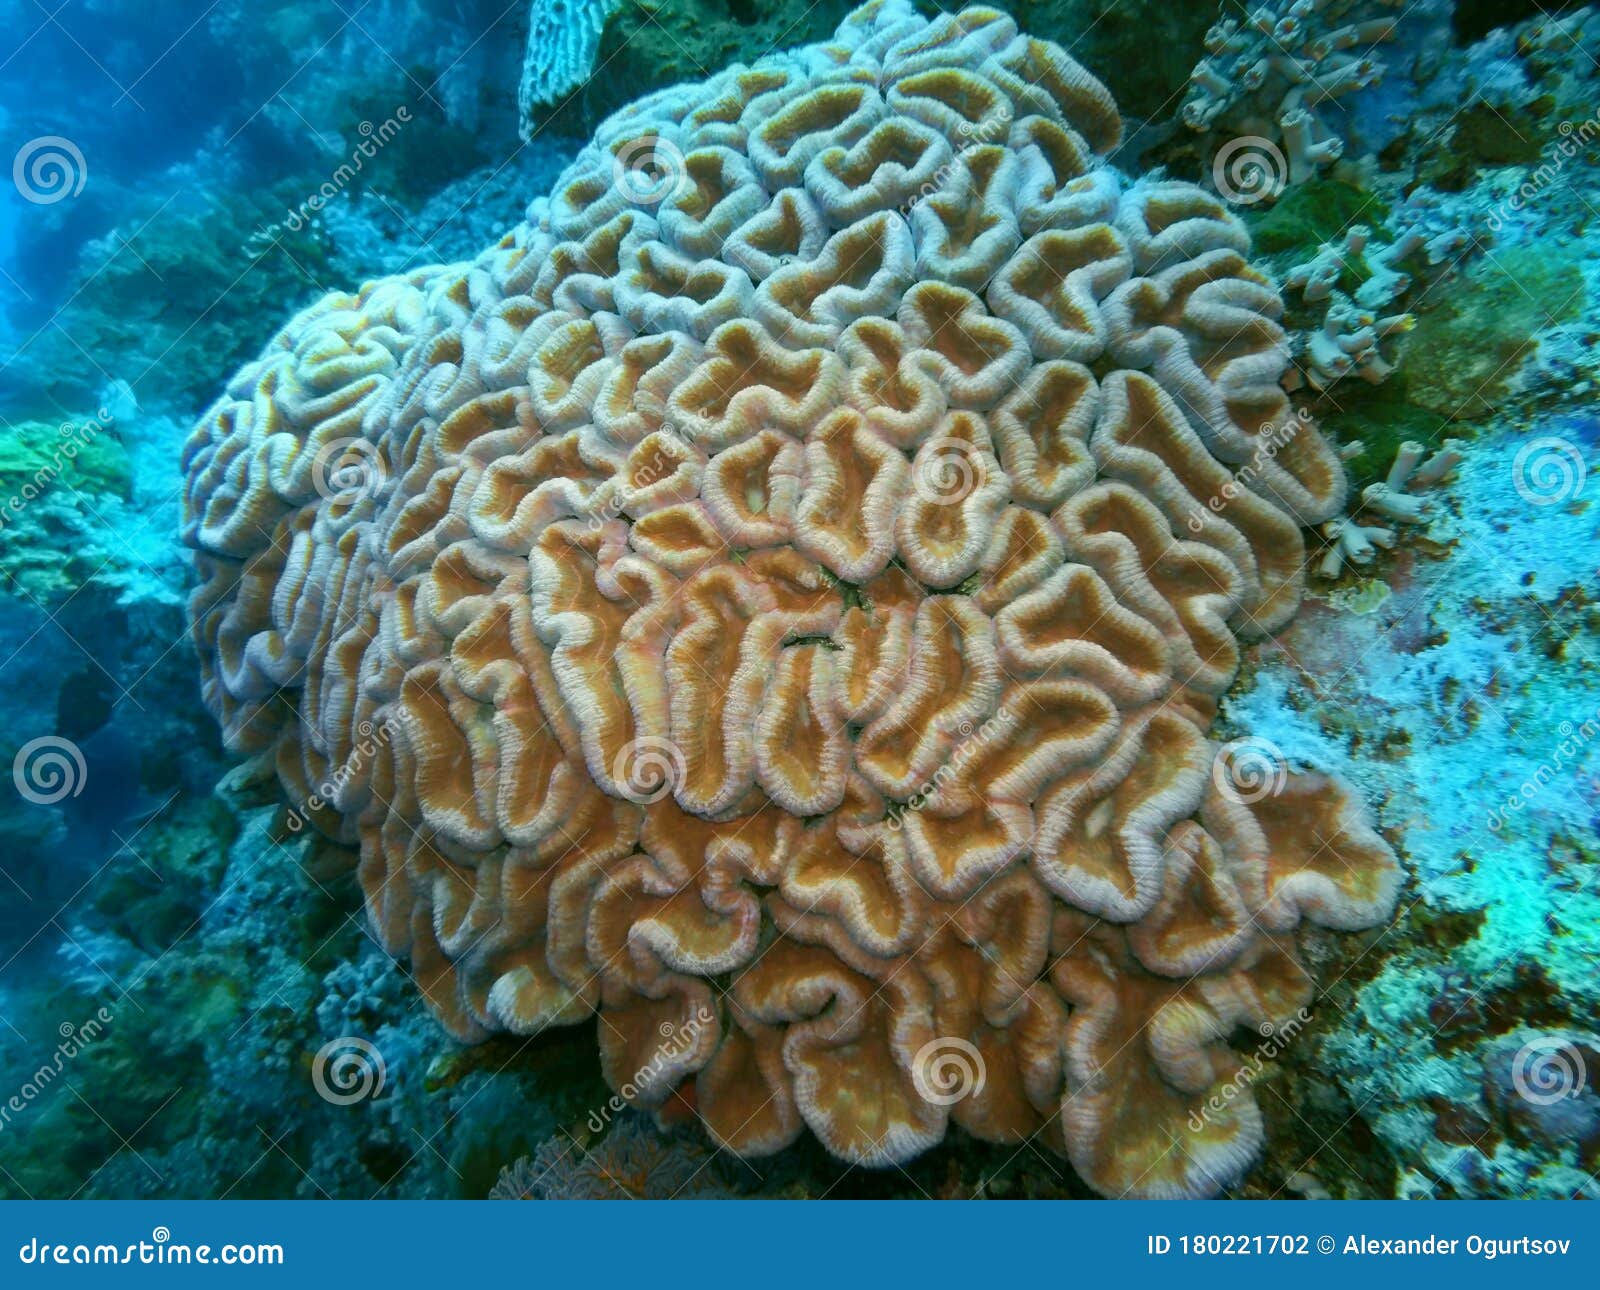 【印尼】「科莫多島」珊瑚粉色沙灘超夢幻！彷彿童話裡搬出來的世外桃源，碧藍海水與絕美海底世界，圓妳一個最浪漫的海島夢！ - 好想去喔